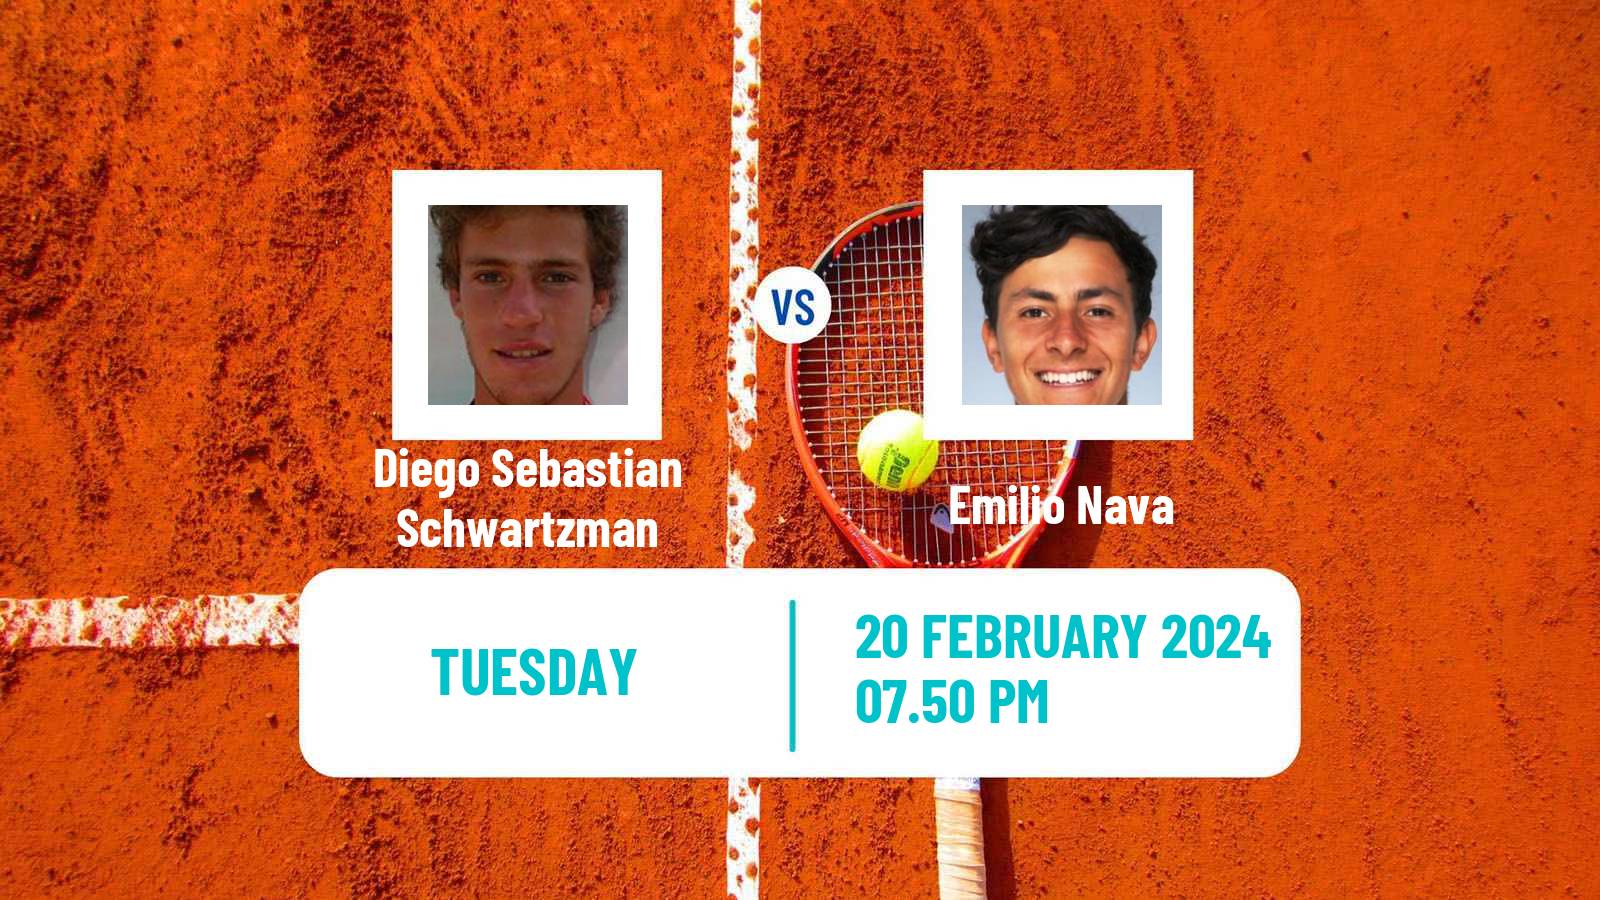 Tennis ATP Los Cabos Diego Sebastian Schwartzman - Emilio Nava